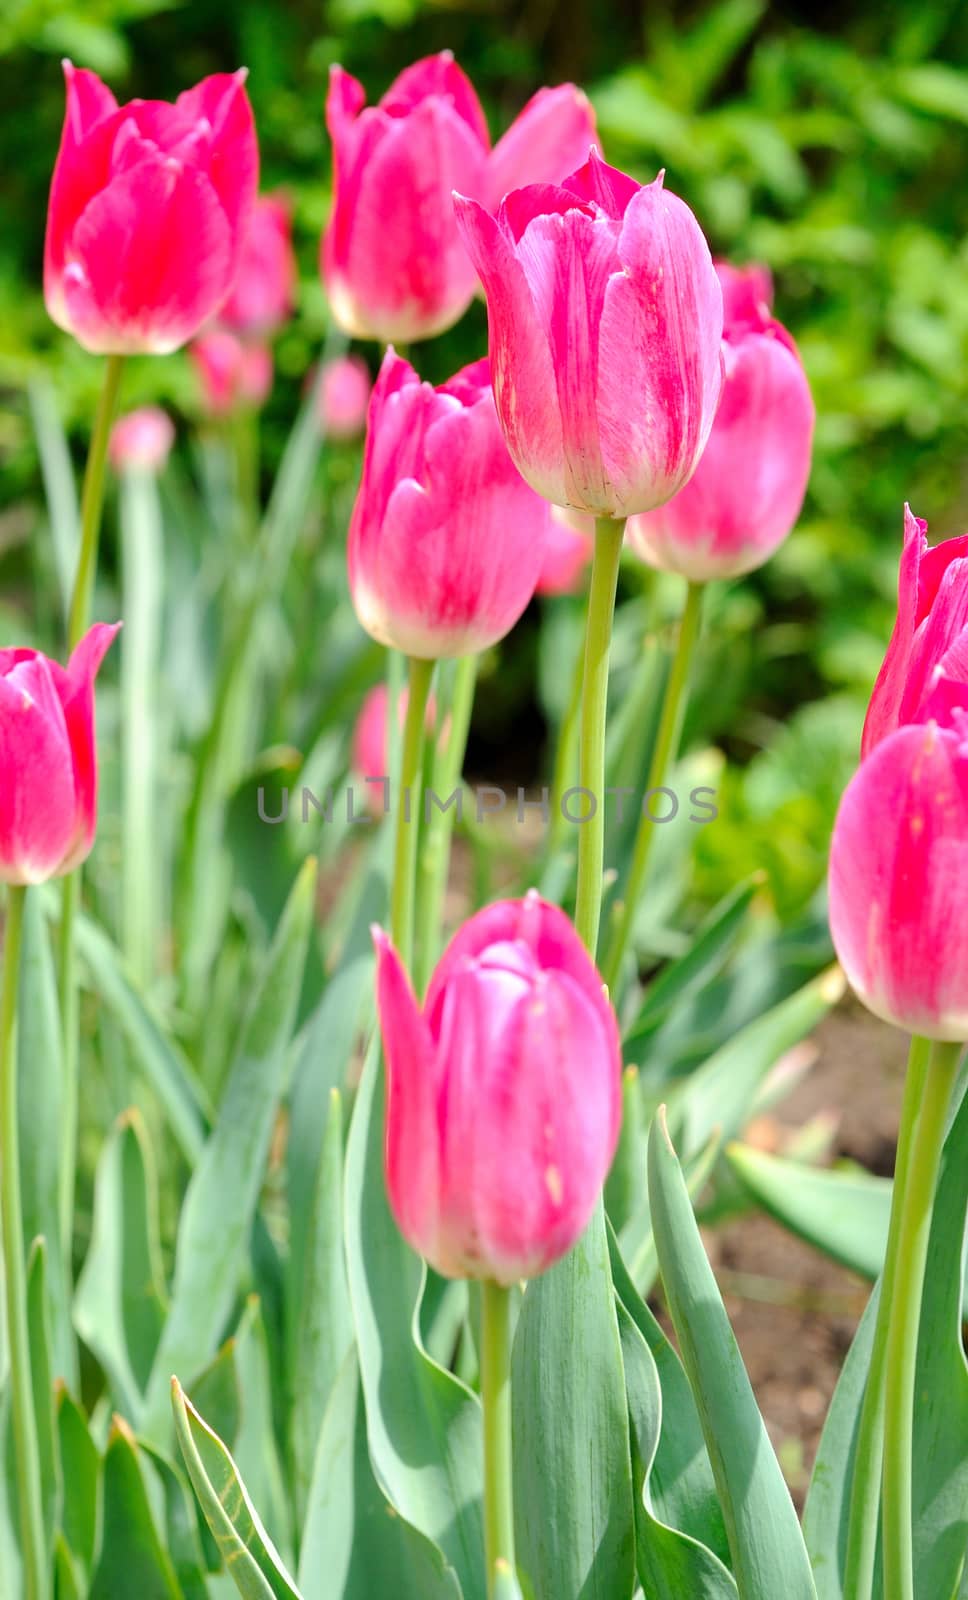 Macro shoot of pink tulips in the garden.